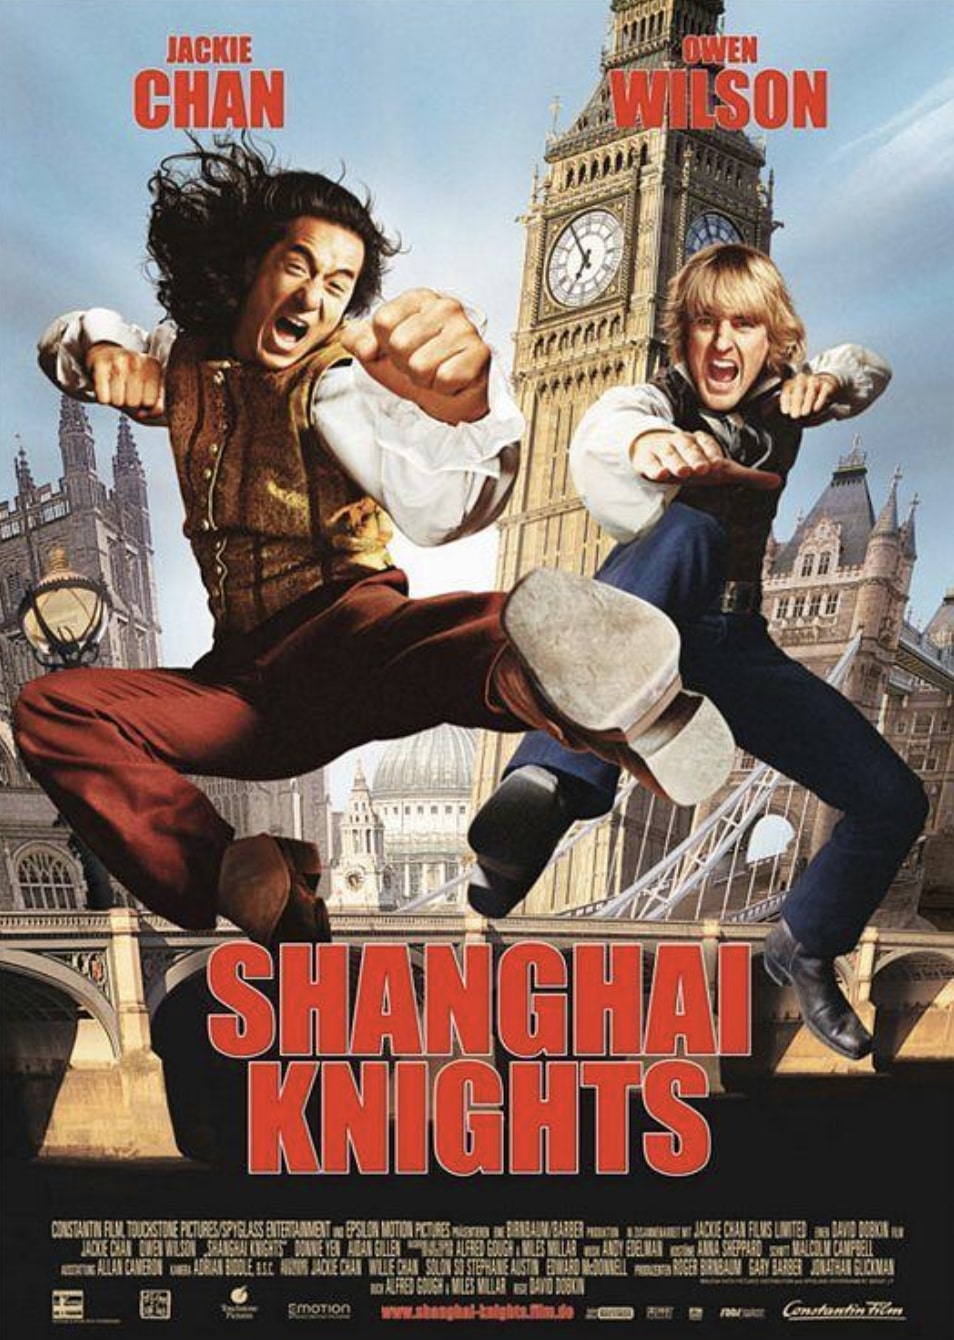 Shanghai Knights (2003) คู่ใหญ่ ฟัดทลายโลก